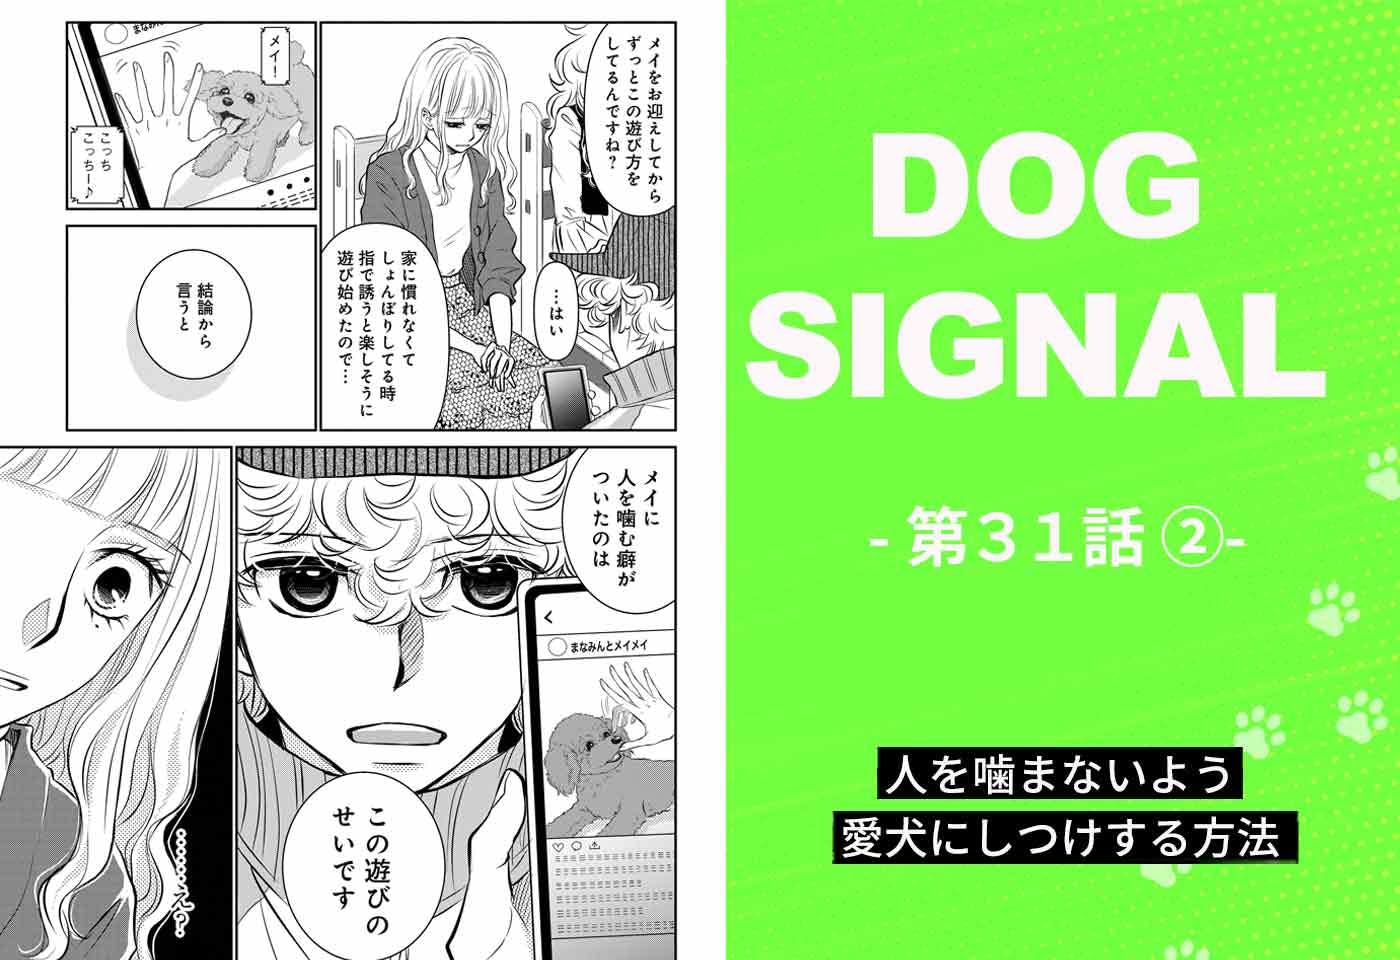 『DOG SIGNAL』31話目2/4　子犬の甘噛み問題（コミック7巻収録分）